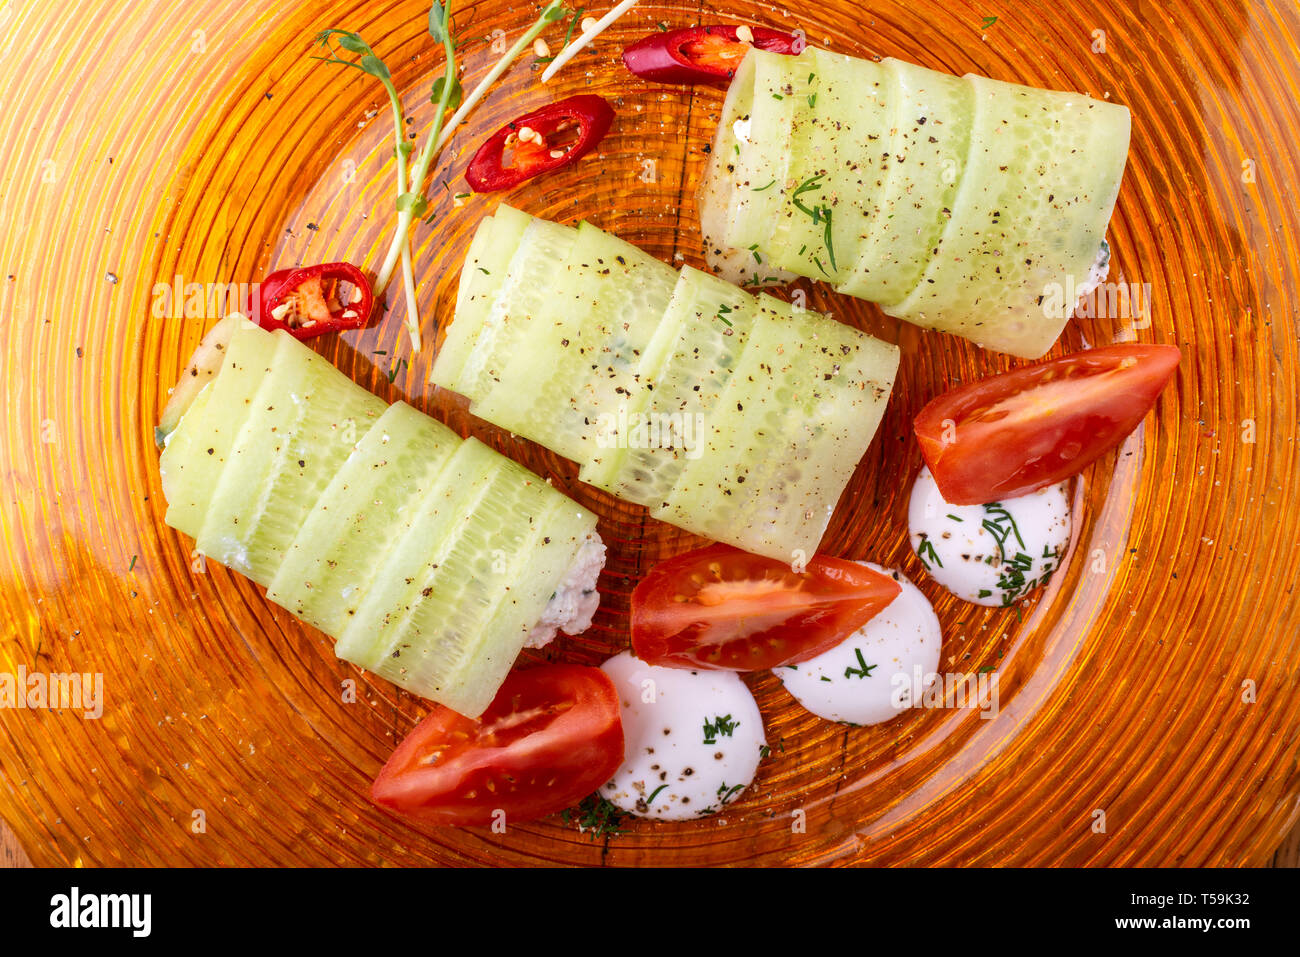 Il cibo italiano sfondo. Mozzarella, di foglie di basilico fresco, pomodoro, olio d'oliva, panini al formaggio e verdi sulla piastra. Close-up Foto Stock